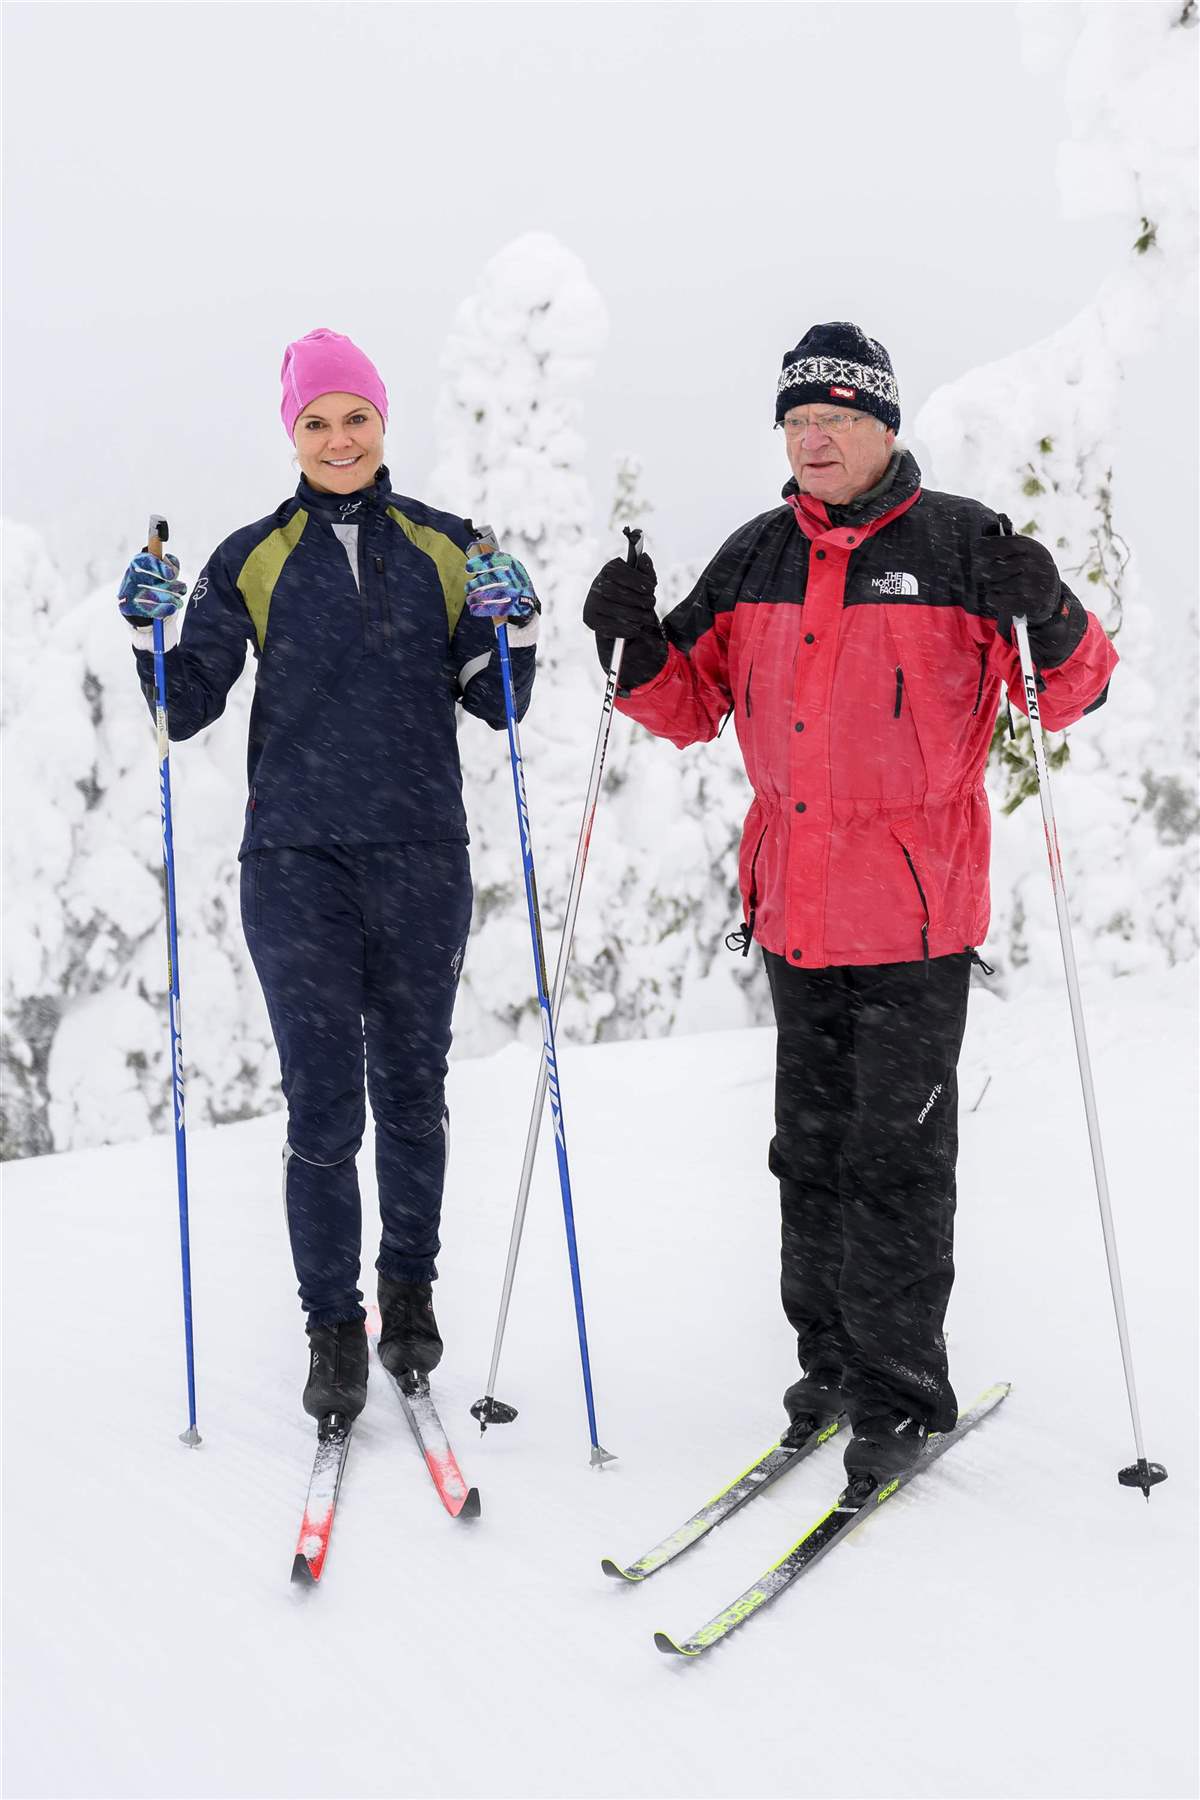 La princesa Victoria de Suecia y el rey Gustavo hacen las paces esquiando